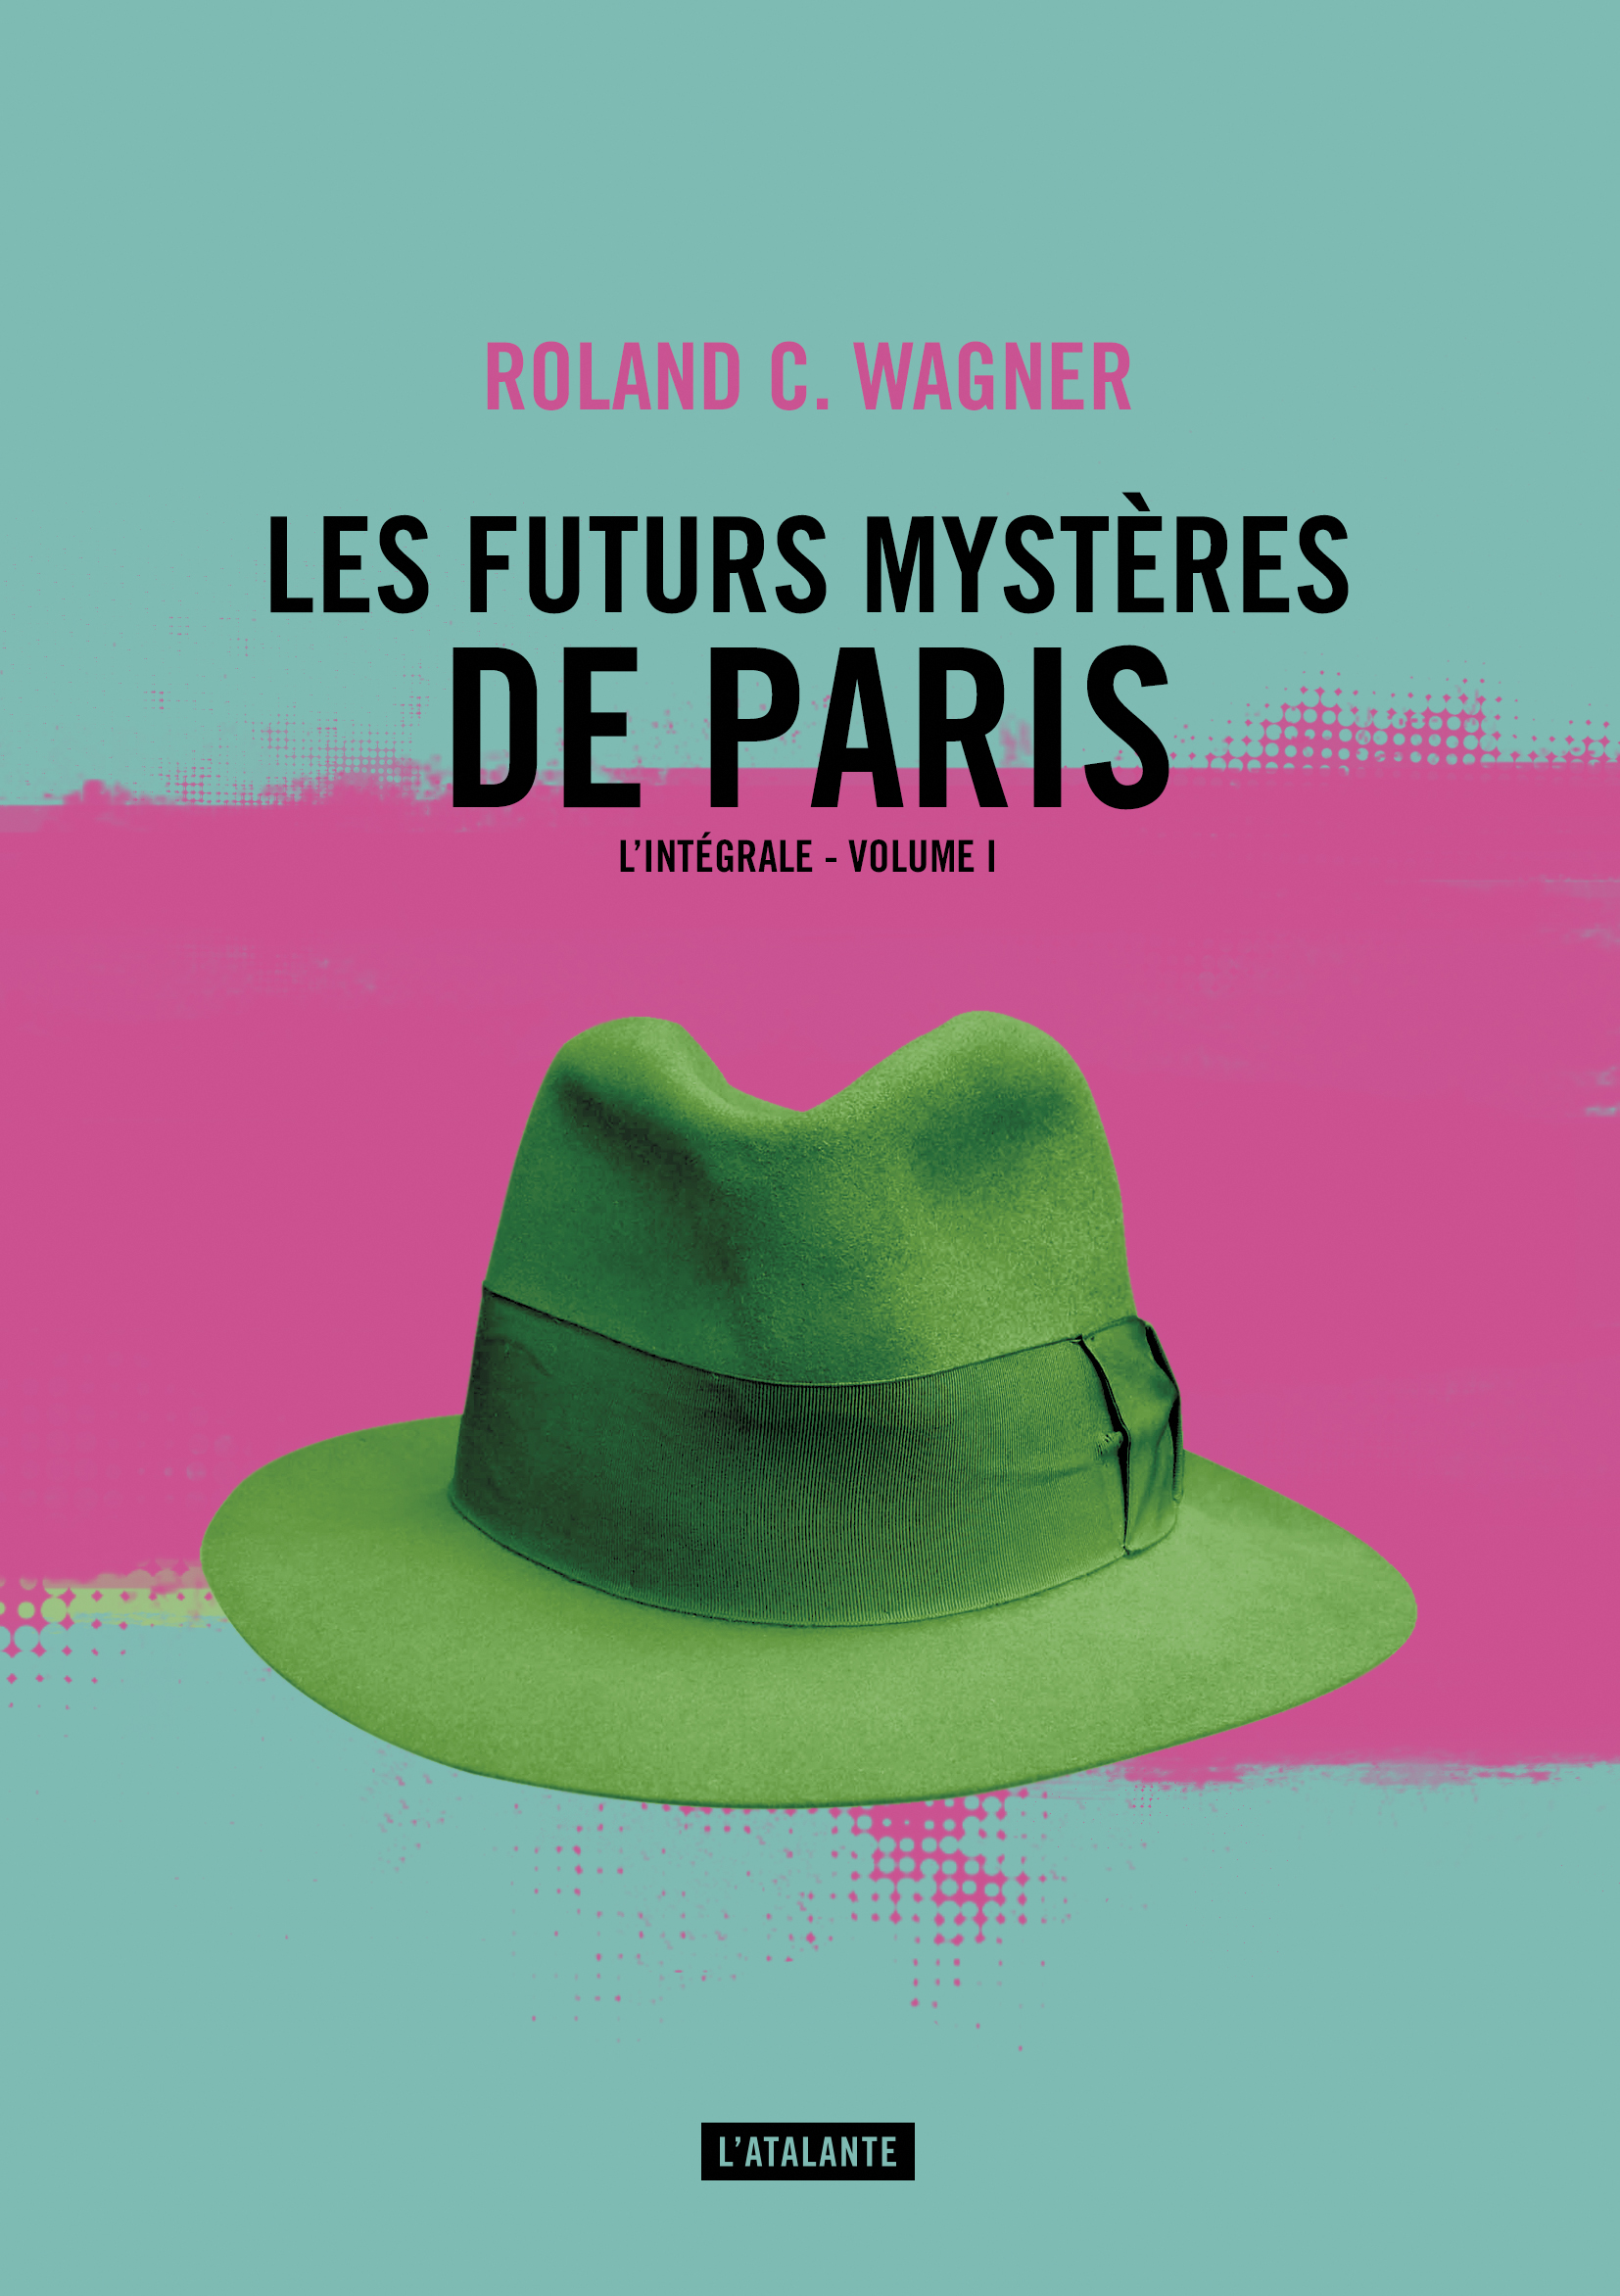 « Les Futurs Mystères de Paris », tome 1, de Roland C. Wagner